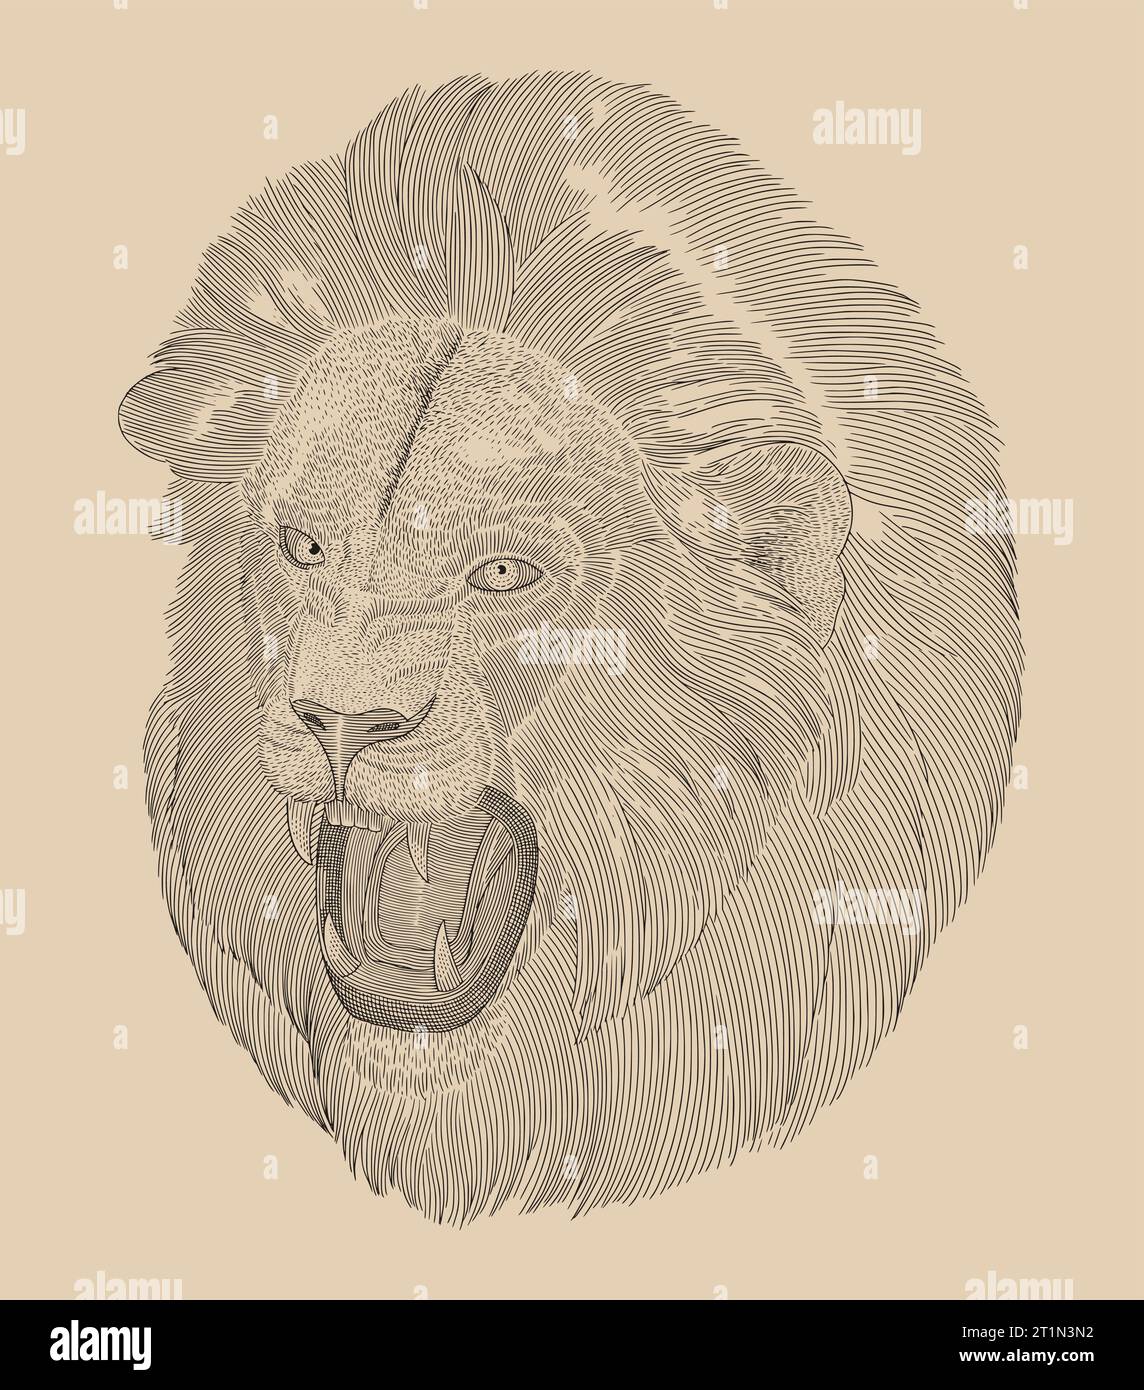 Portrait d'une tête de lion agressive, illustration de style dessin gravure Vintage Illustration de Vecteur